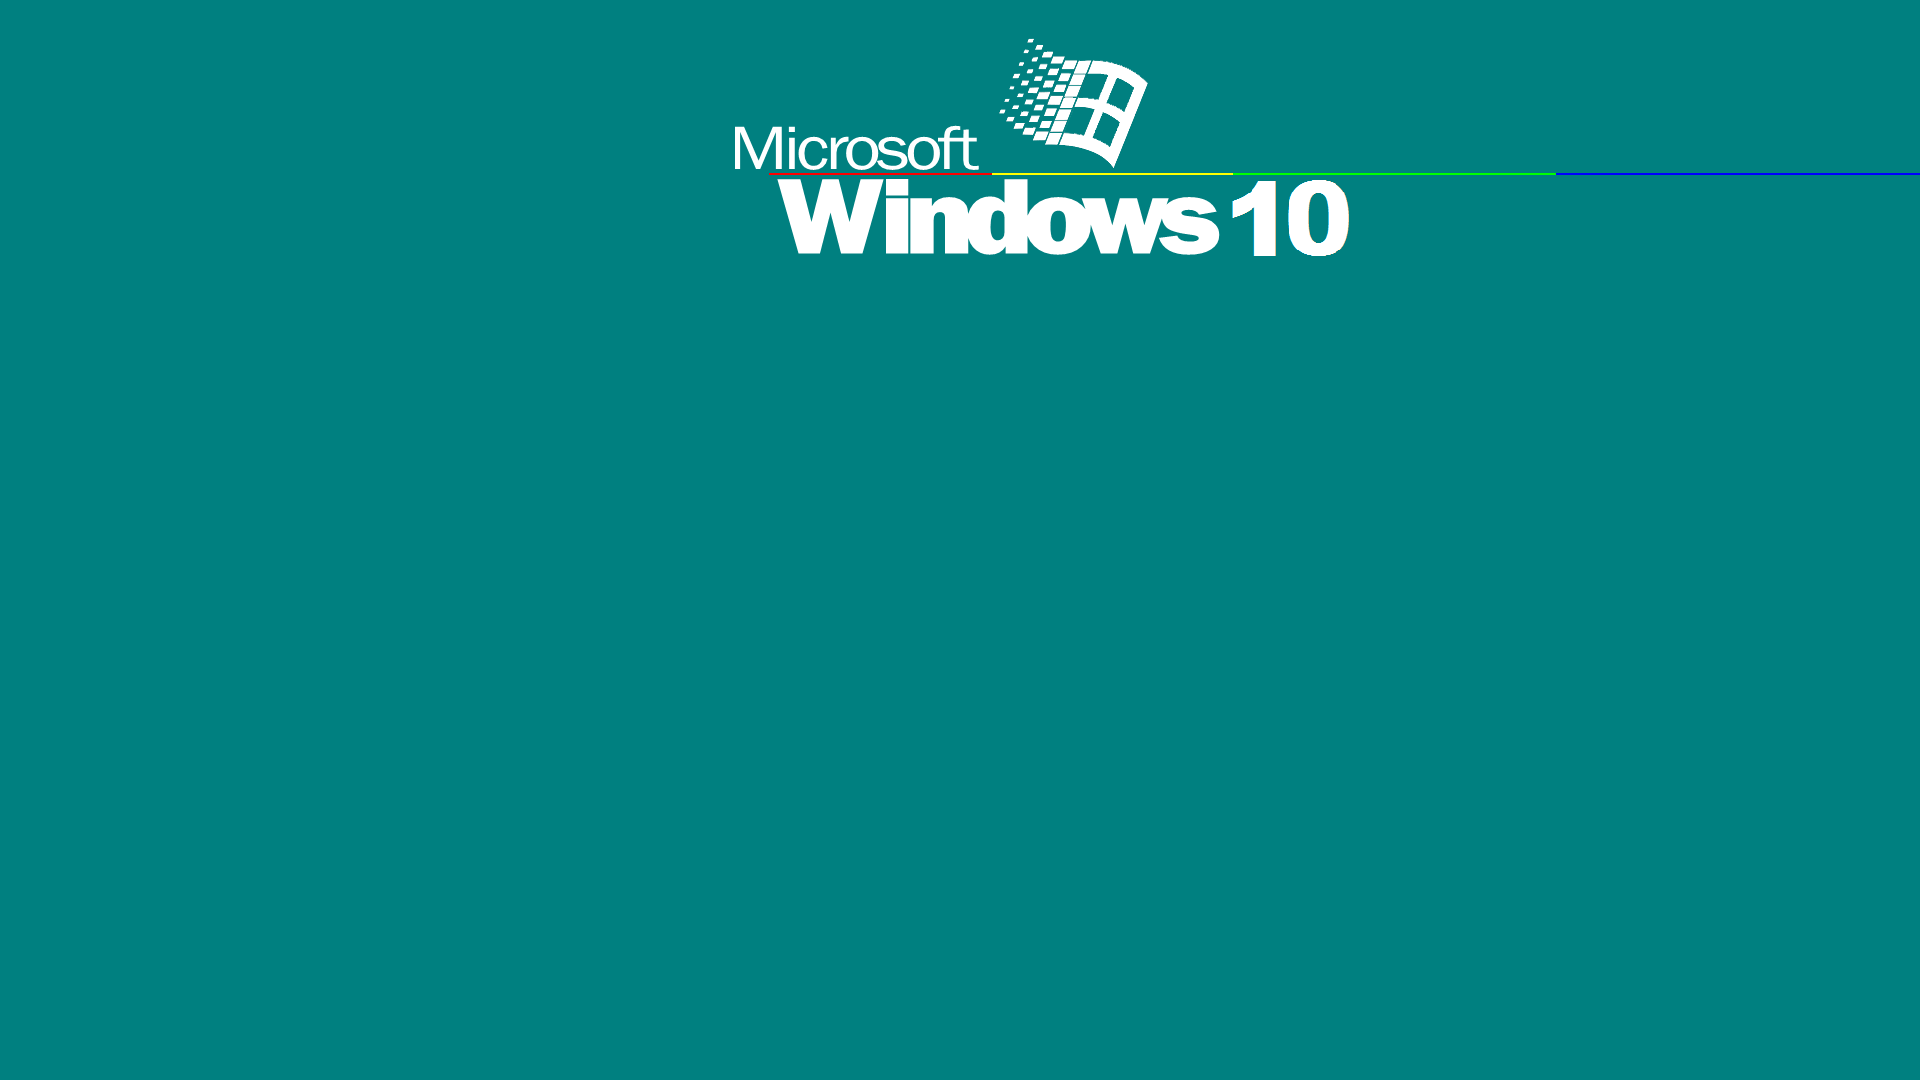 Bạn đã thay đổi hình nền không may trên Windows 10 của mình? Đừng lo lắng, tuyệt đối có cách để bạn quay trở lại hình nền mặc định của Windows 10 cũ. Hãy theo dõi hướng dẫn ngắn gọn của chúng tôi để trở về với hình nền mà Microsoft thiết lập sẵn cho bạn.